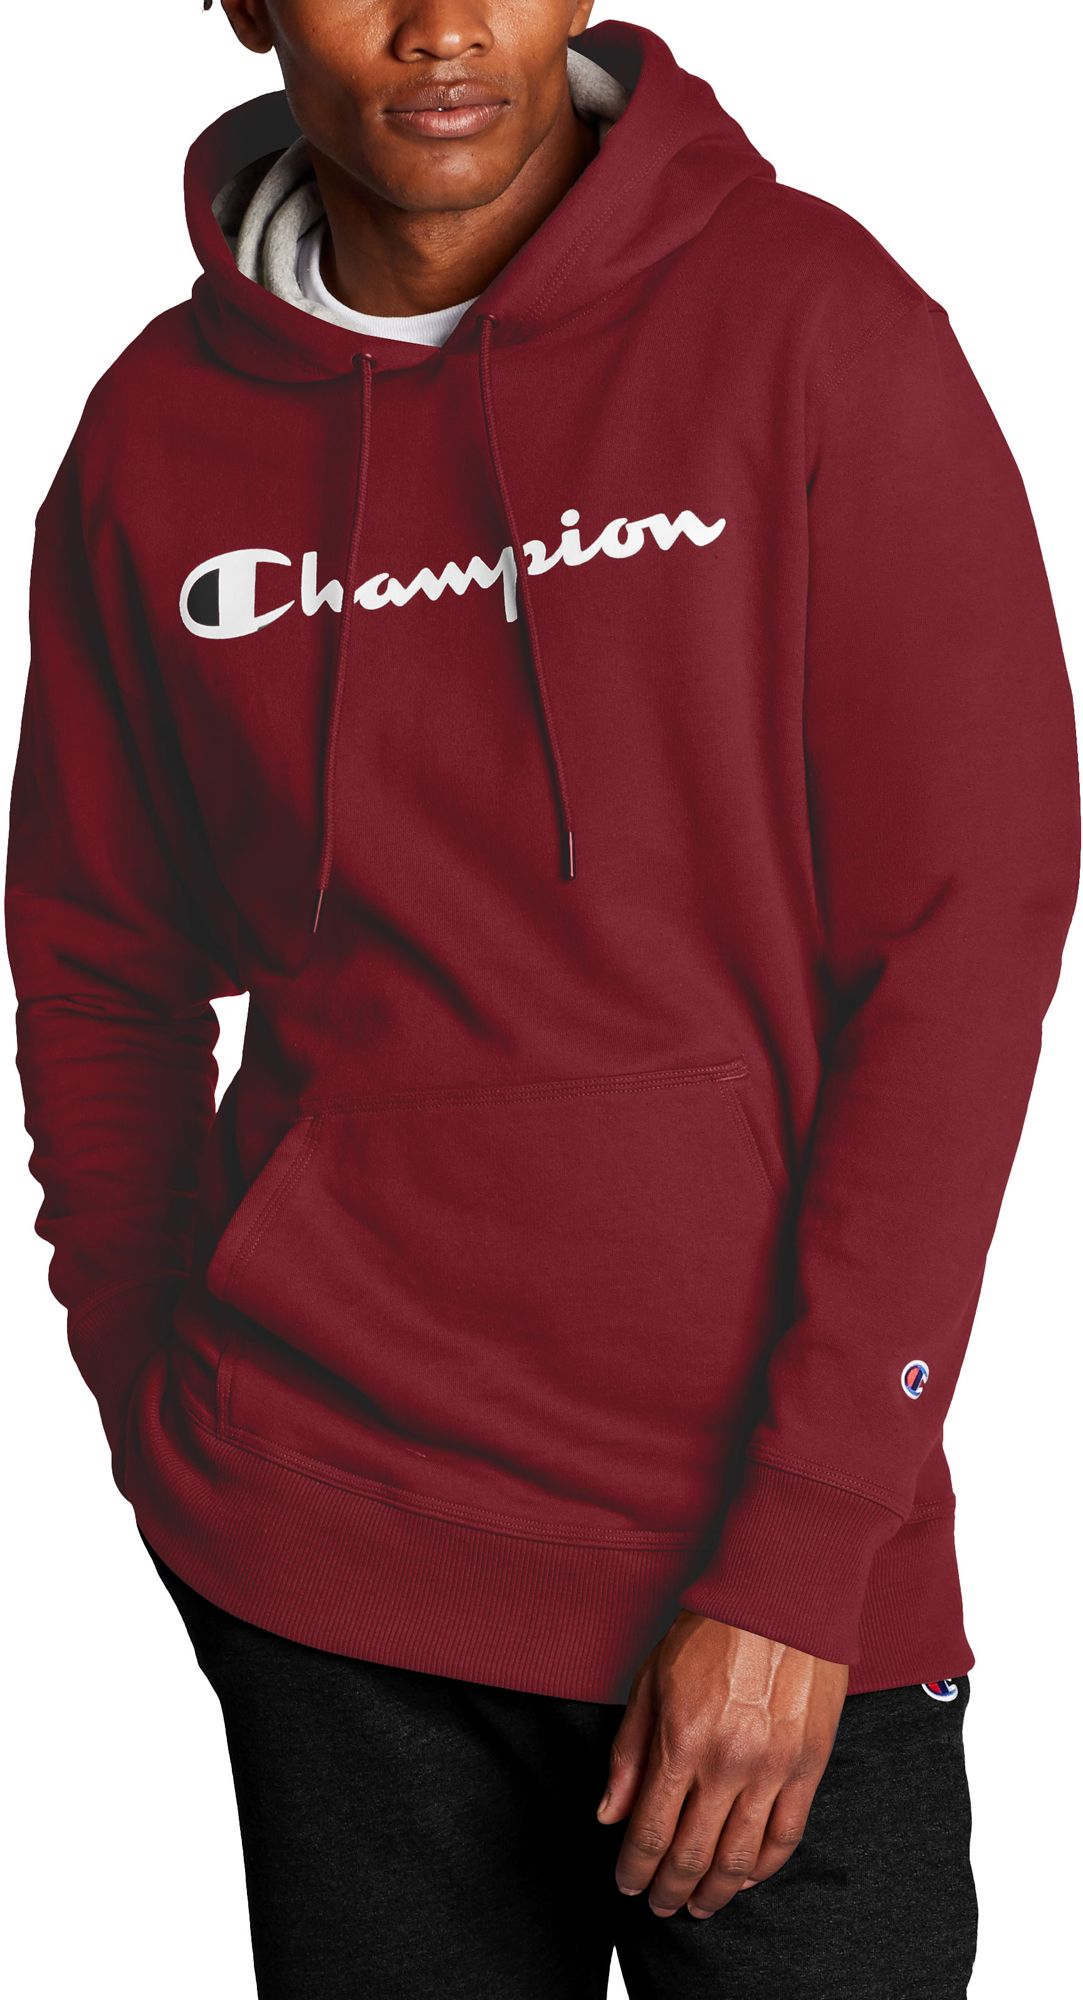 champion sweatshirt and sweatpants